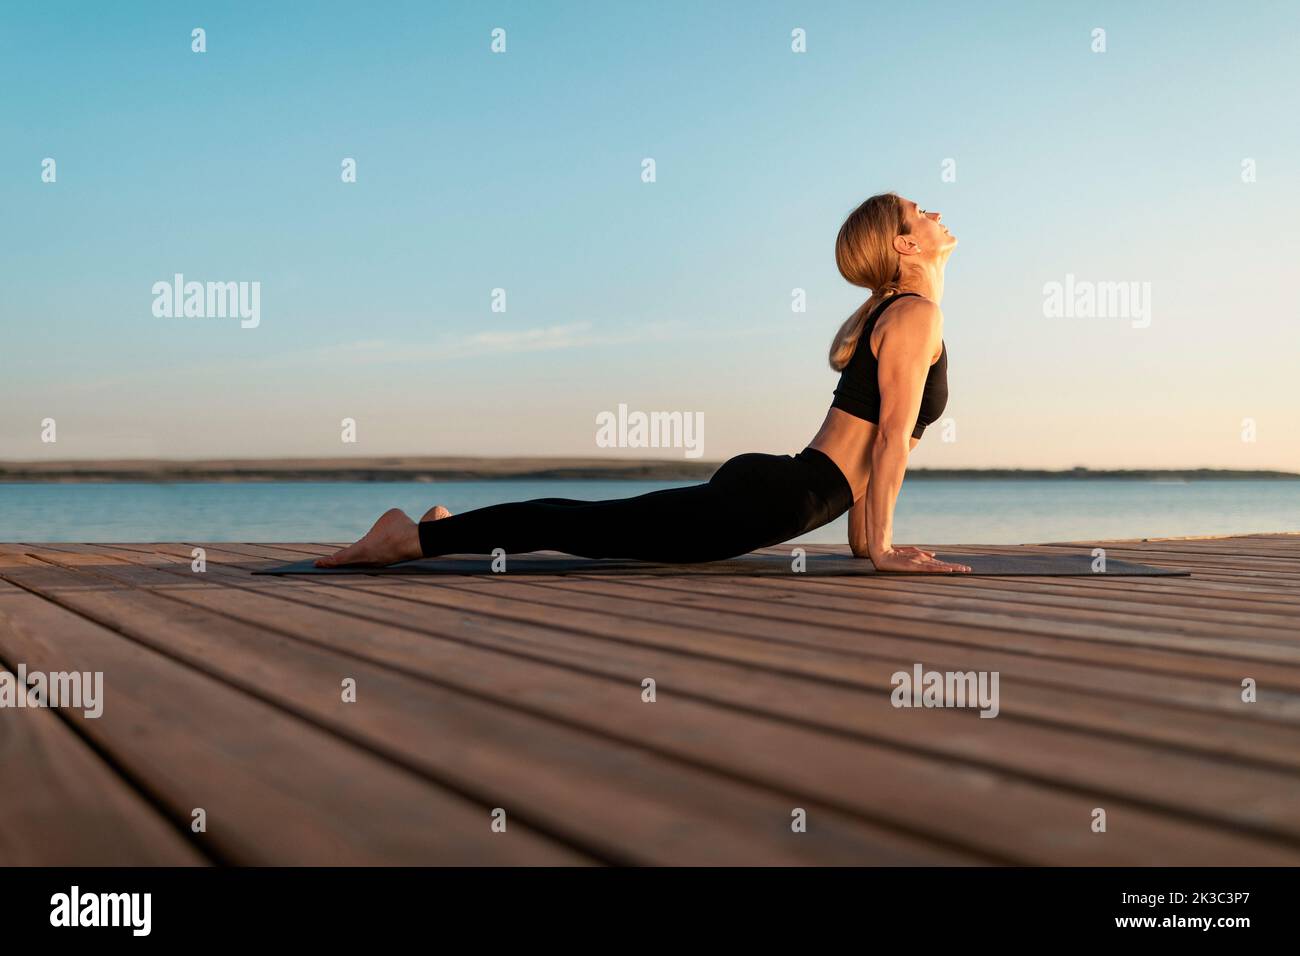 Sporty middle aged female practicing yoga outdoors, making upward facing dog pose Stock Photo